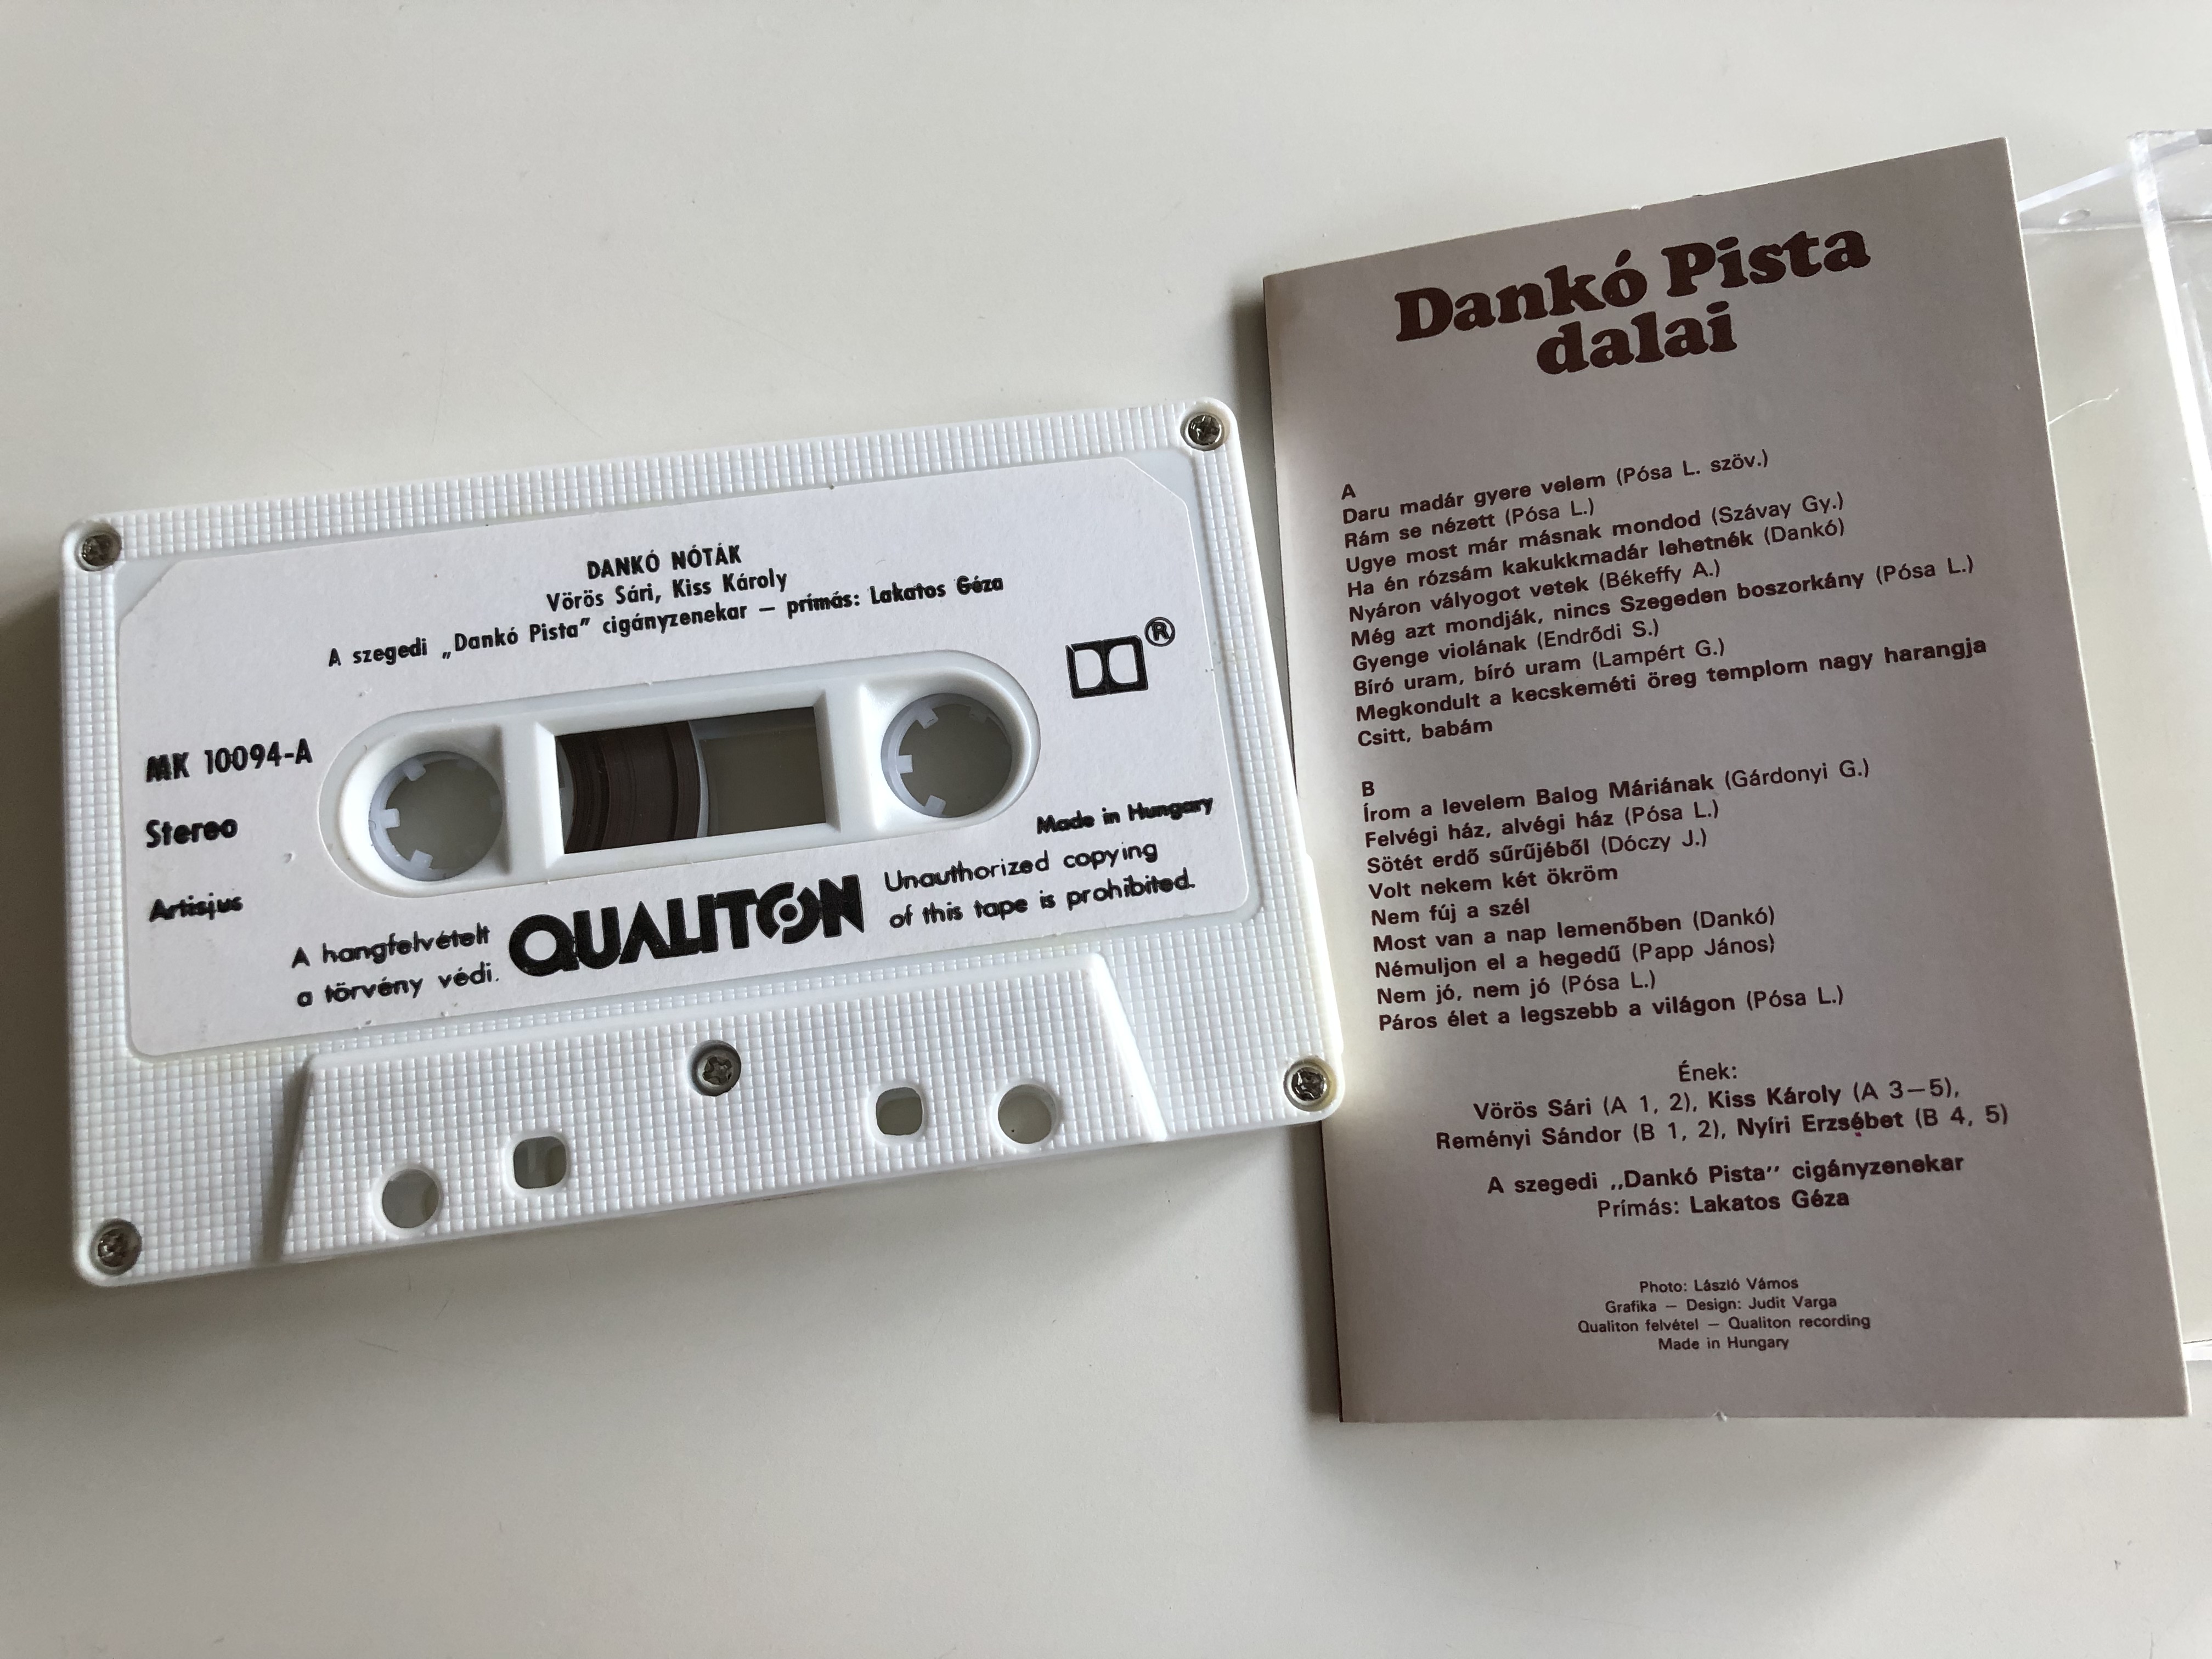 dank-n-t-k-songs-by-pista-dank-hungaroton-cassette-stereo-mk-10094-4-.jpg